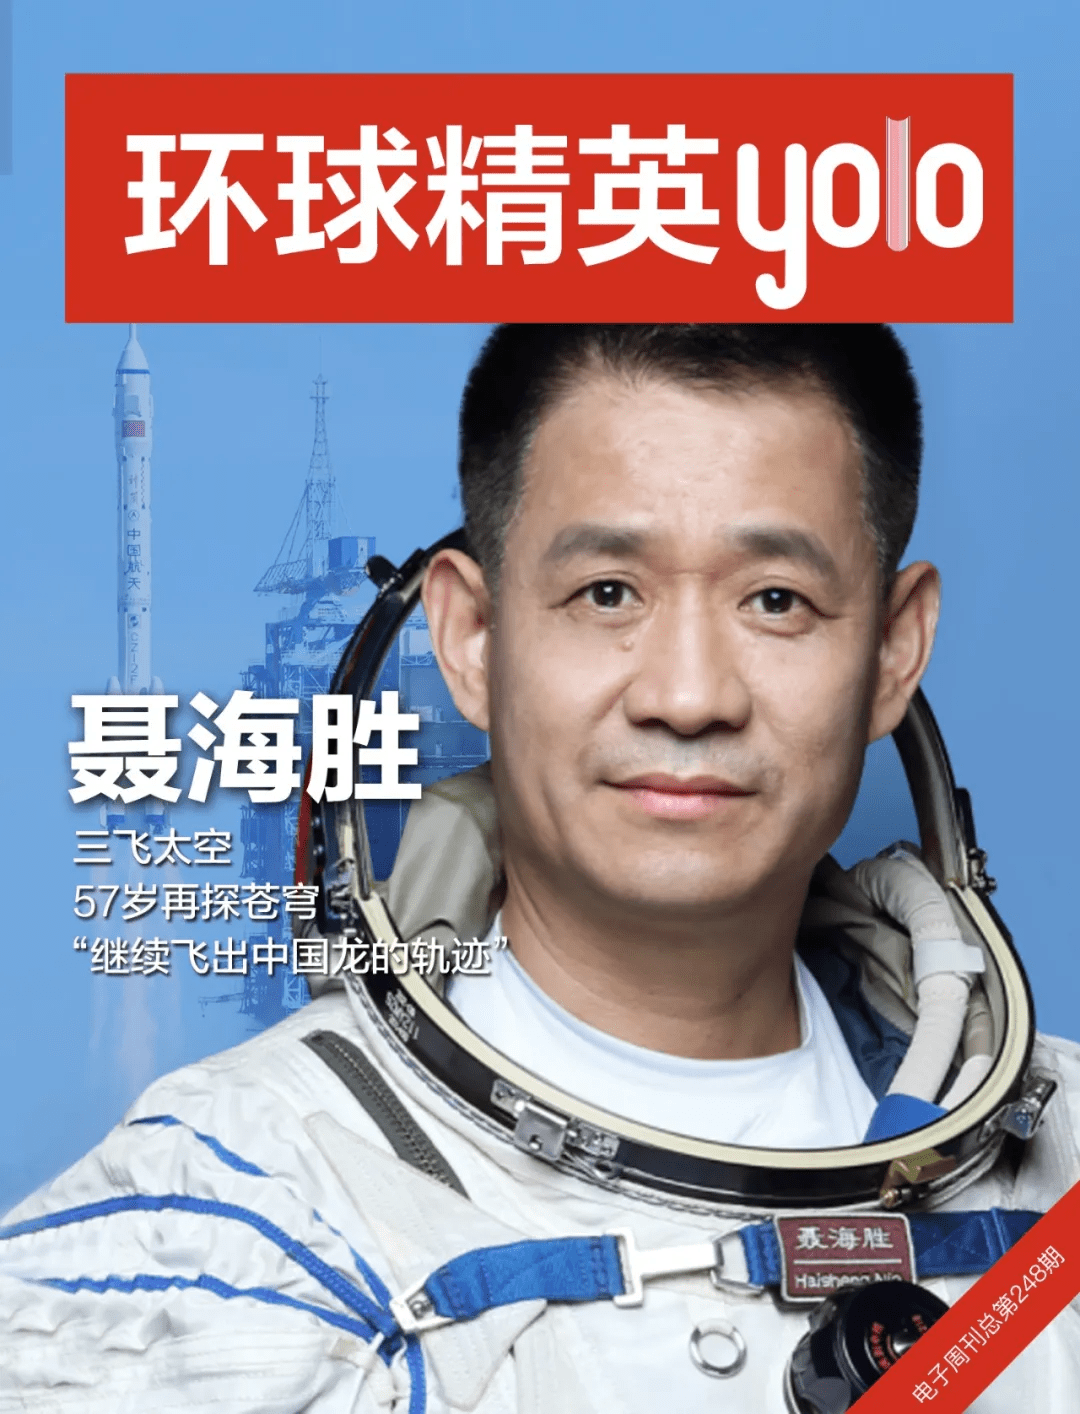 聂海胜:三飞太空,57岁再探苍穹,"继续飞出中国龙的轨迹"